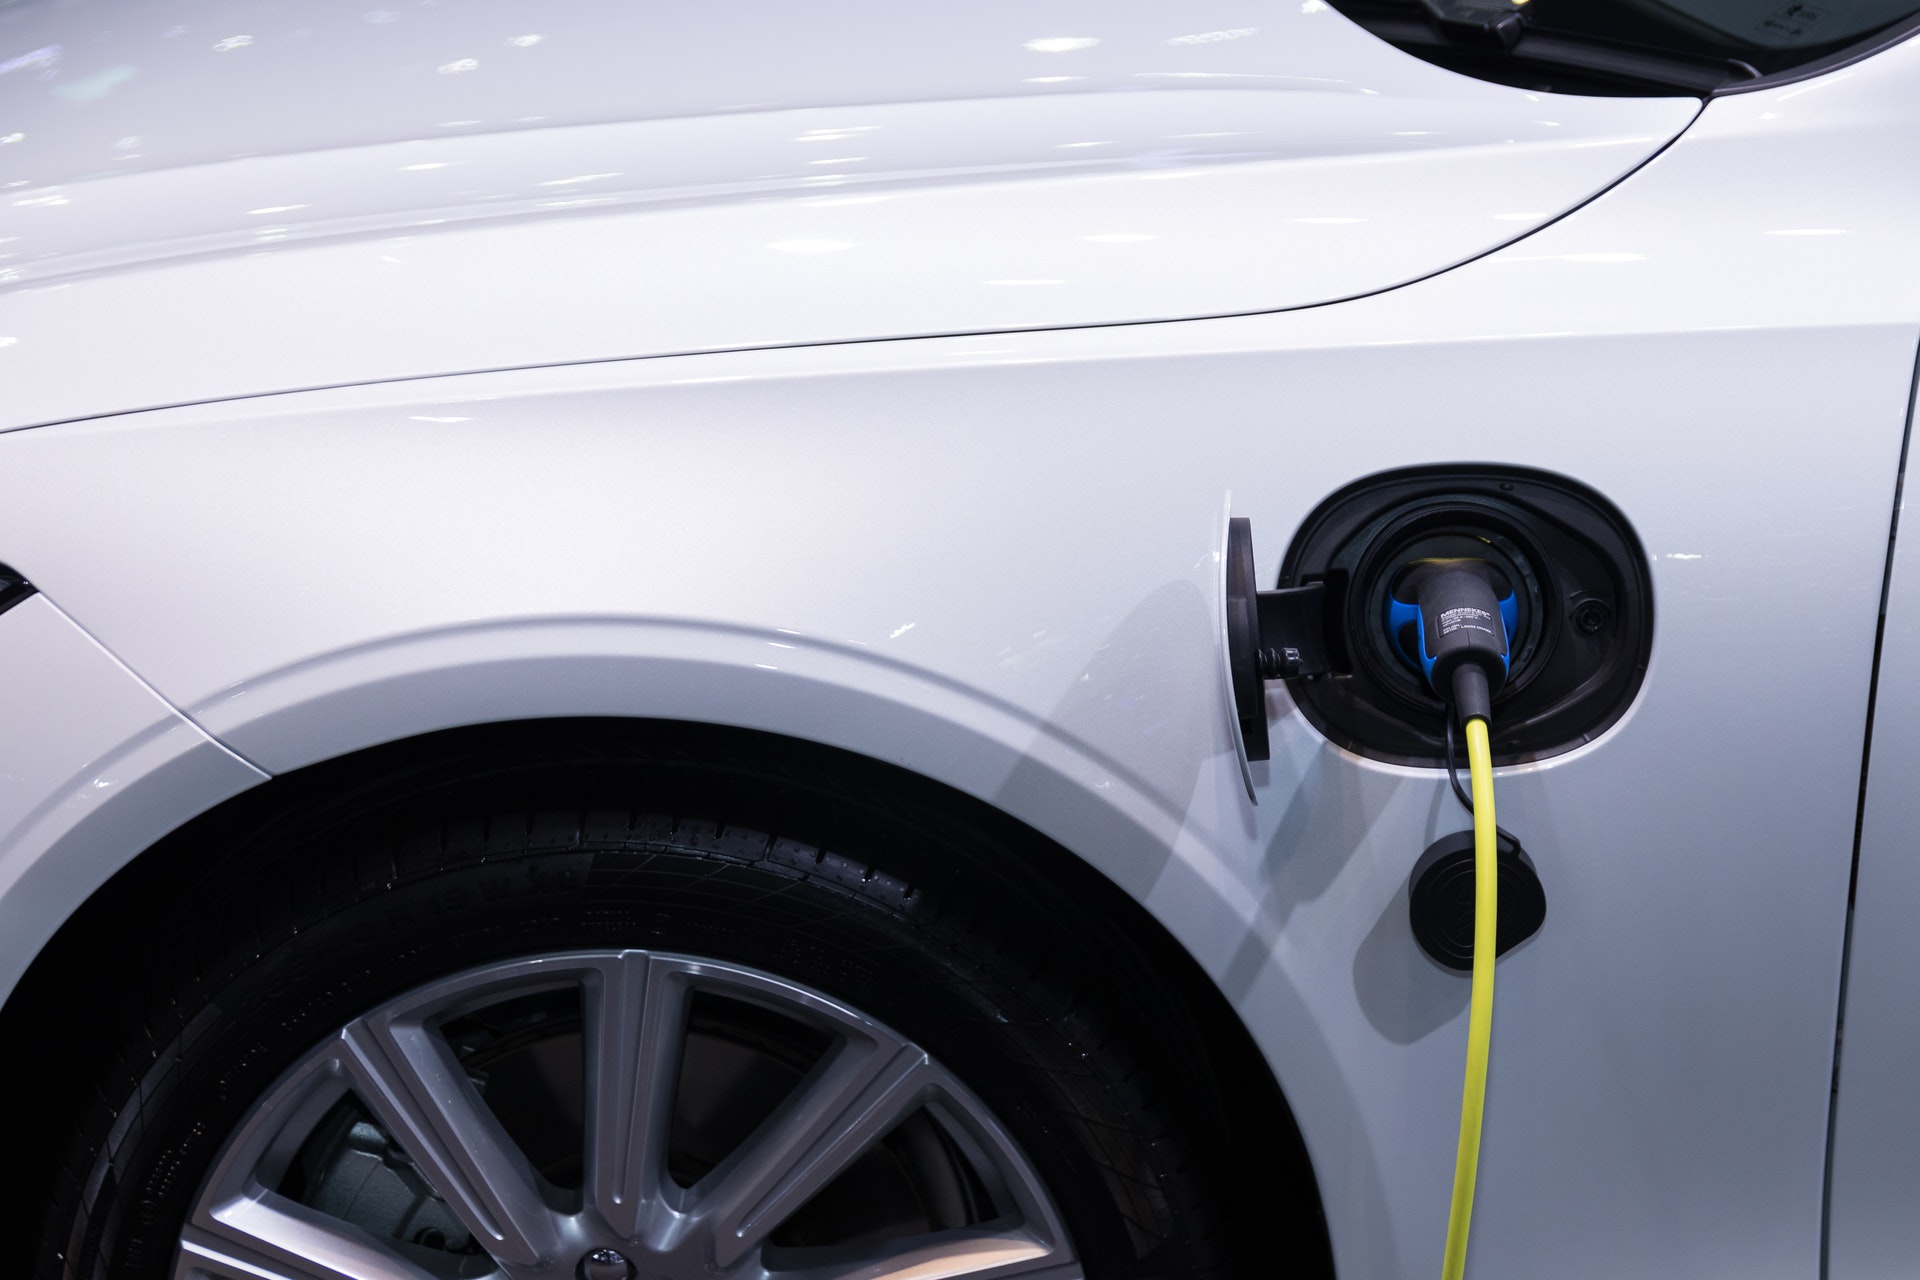 vehicules electriques changements reseau electrique europeen - L'Energeek.jpg